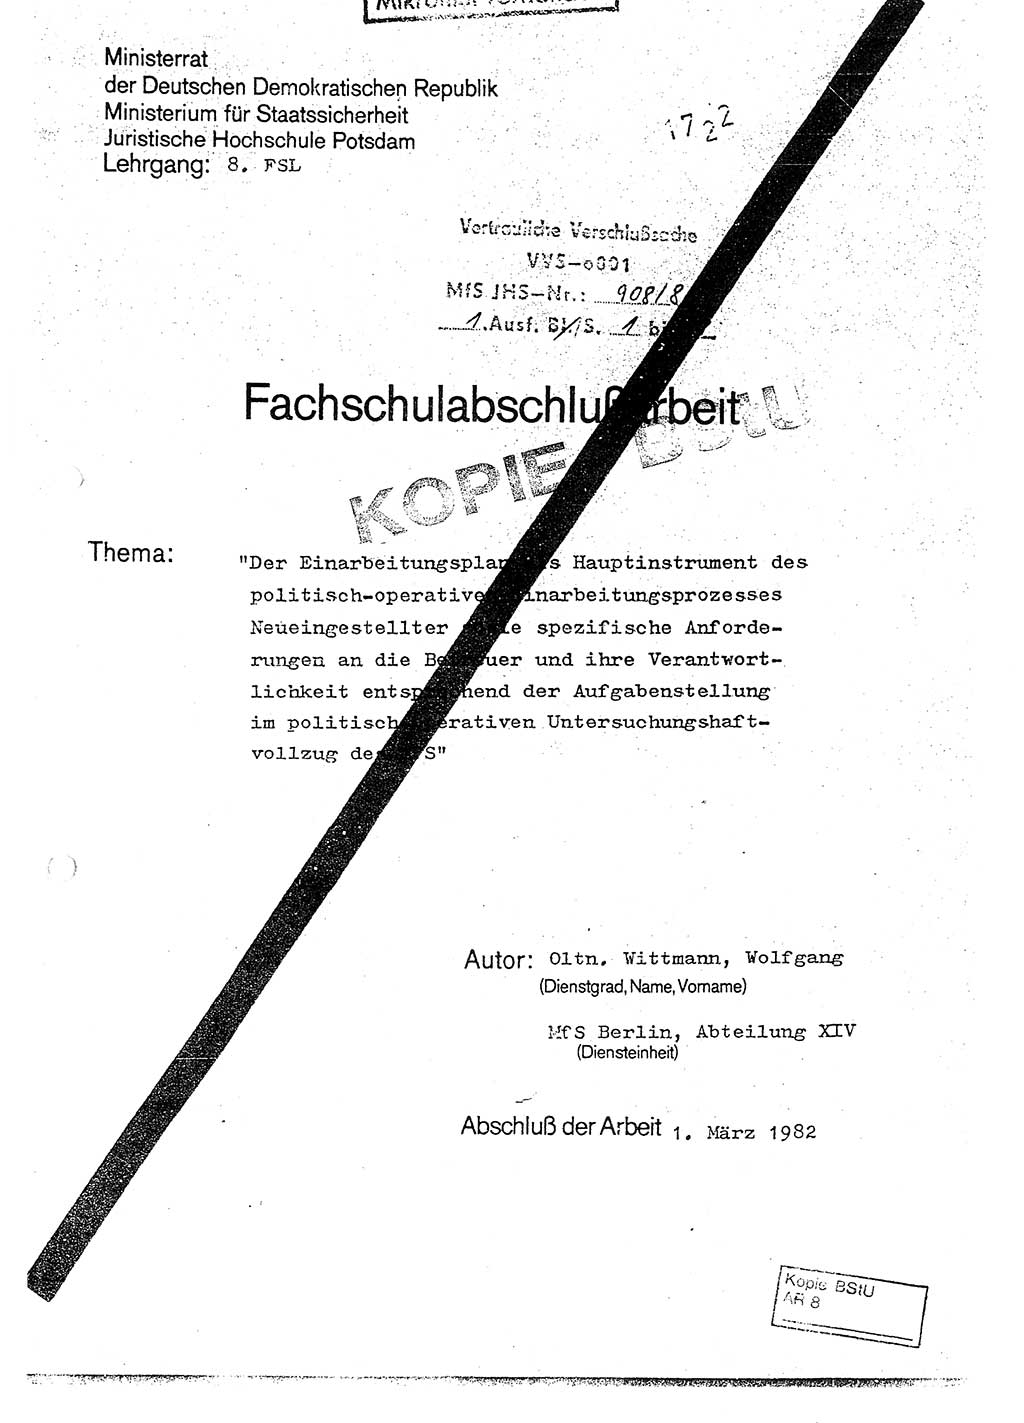 Fachschulabschlußarbeit Oberleutnant Wolfgang Wittmann (Abt. ⅩⅣ), Ministerium für Staatssicherheit (MfS) [Deutsche Demokratische Republik (DDR)], Juristische Hochschule (JHS), Vertrauliche Verschlußsache (VVS) o001-908/82, Potsdam 1982, Blatt 1 (FS-Abschl.-Arb. MfS DDR JHS VVS o001-908/82 1982, Bl. 1)